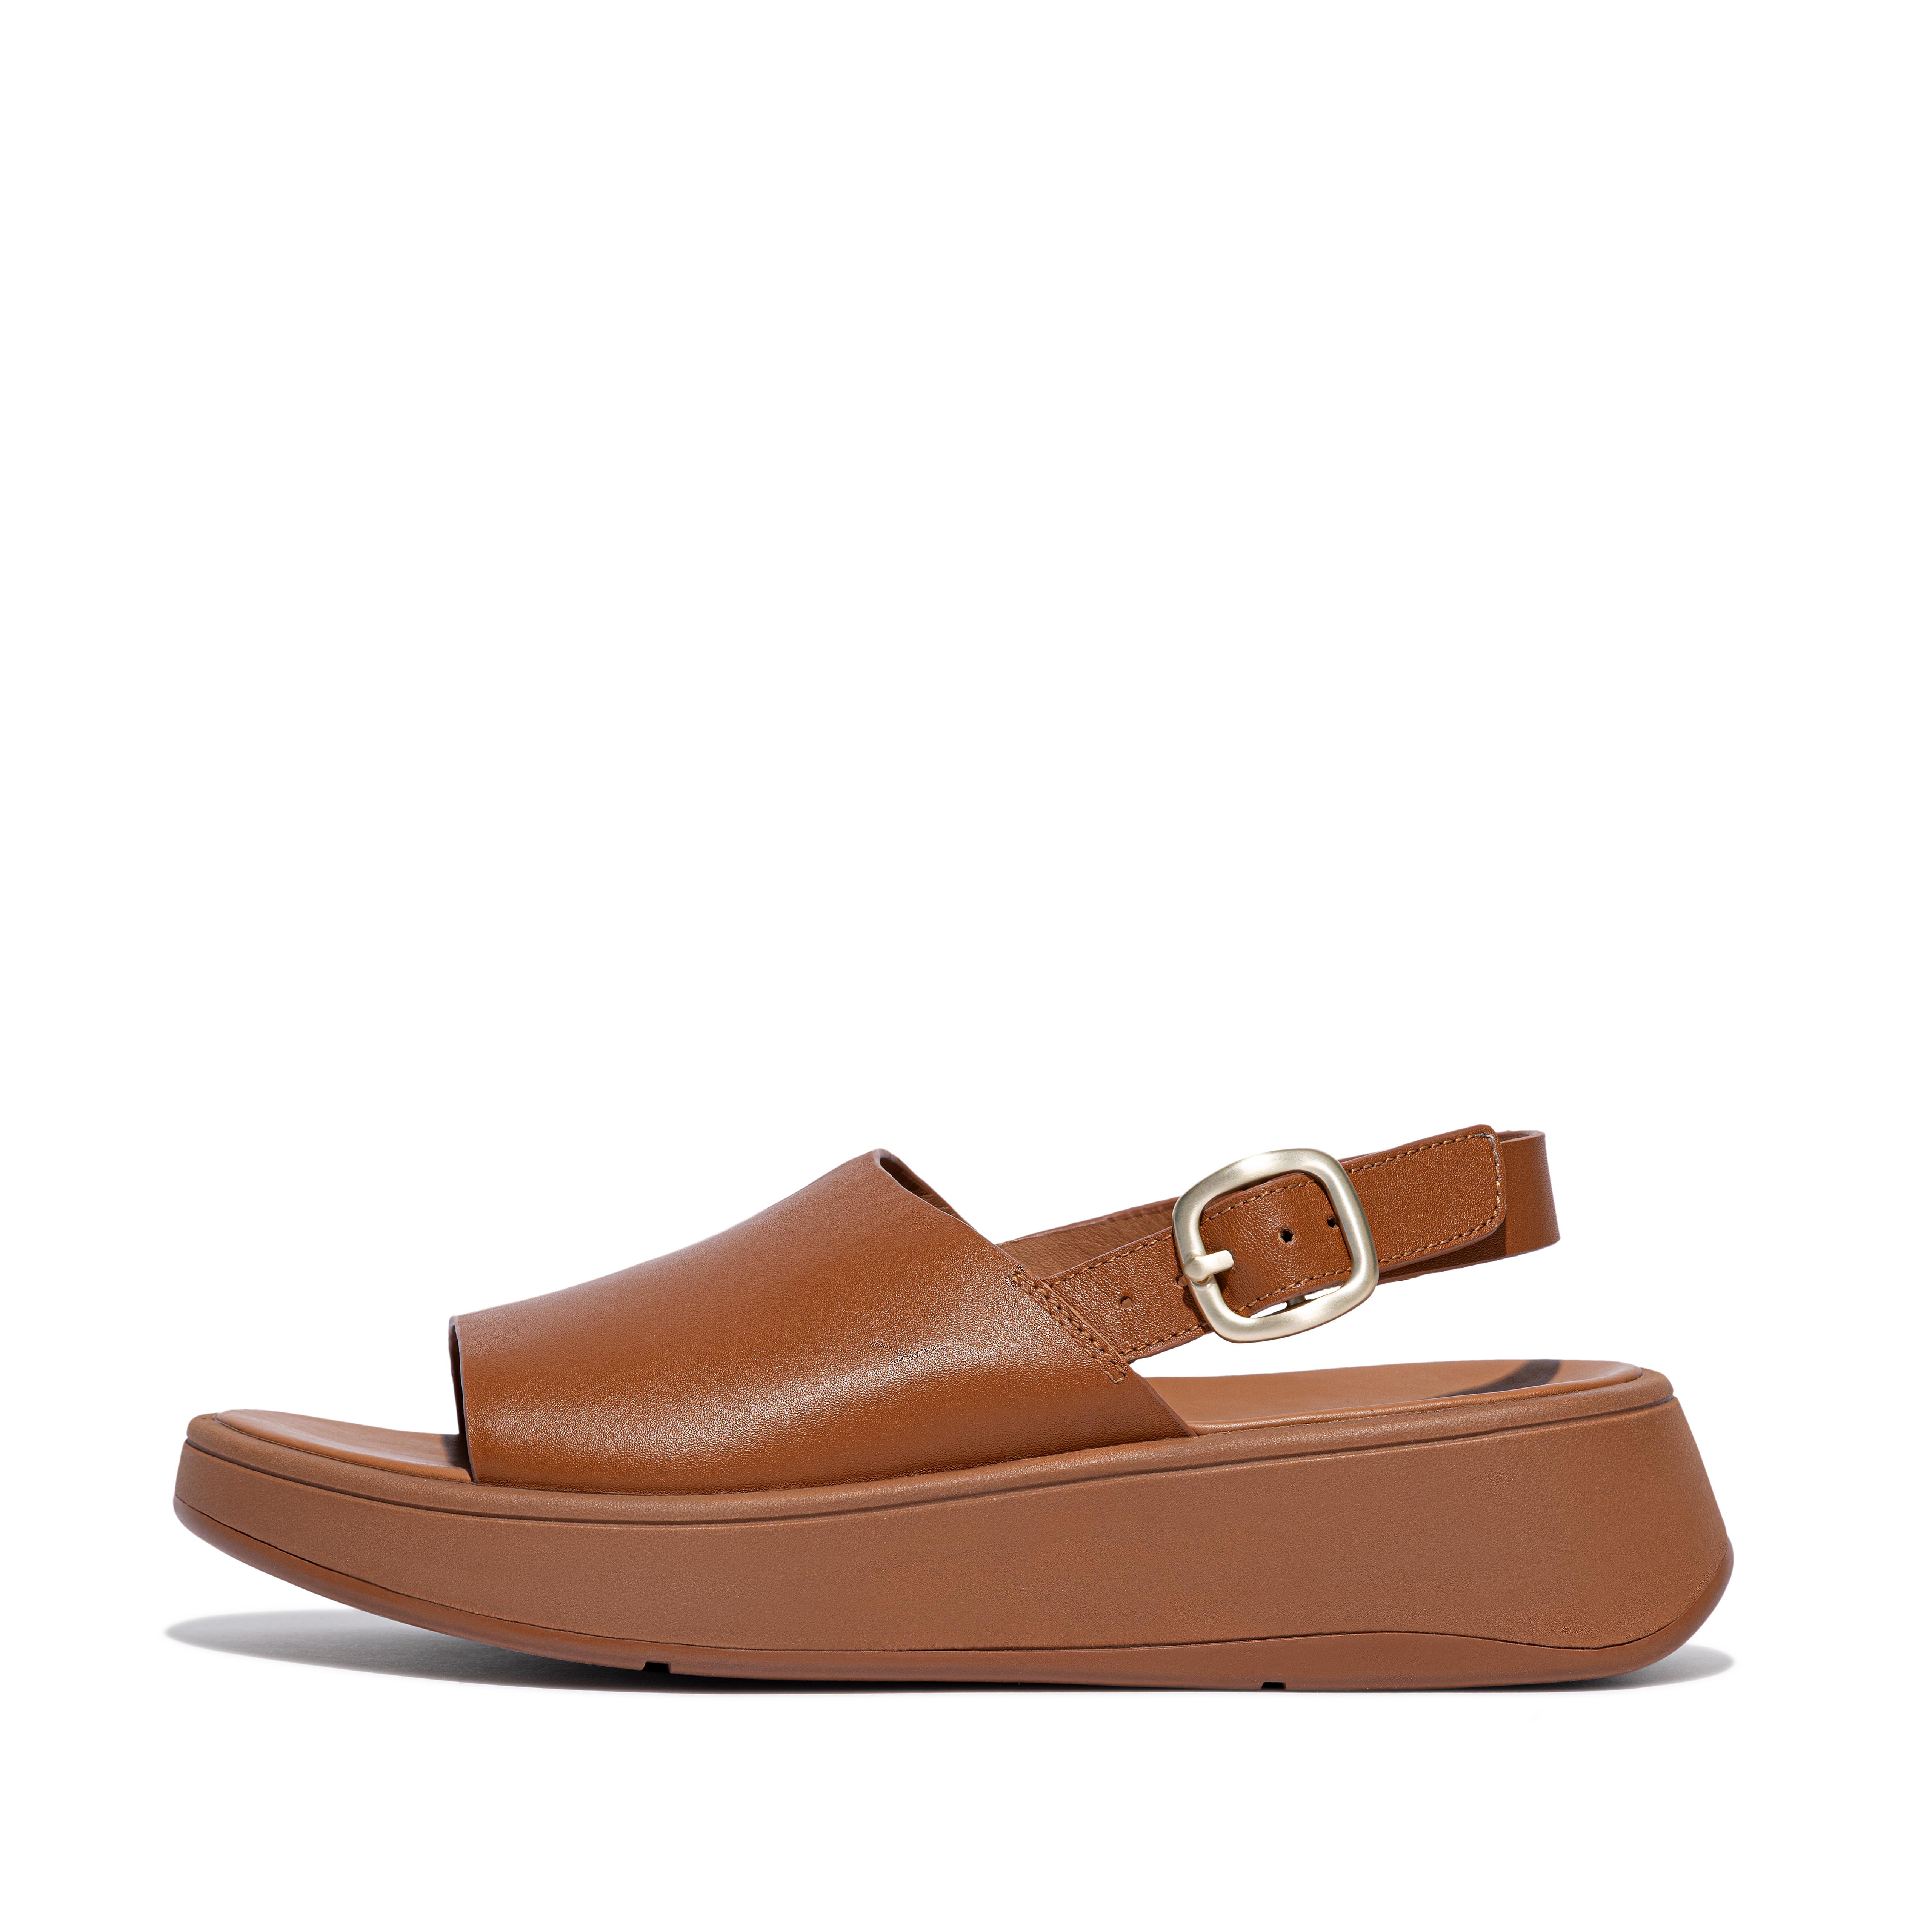 핏플랍 샌들 Fitflop Leather Flatform Back-Strap Sandals,Light Tan